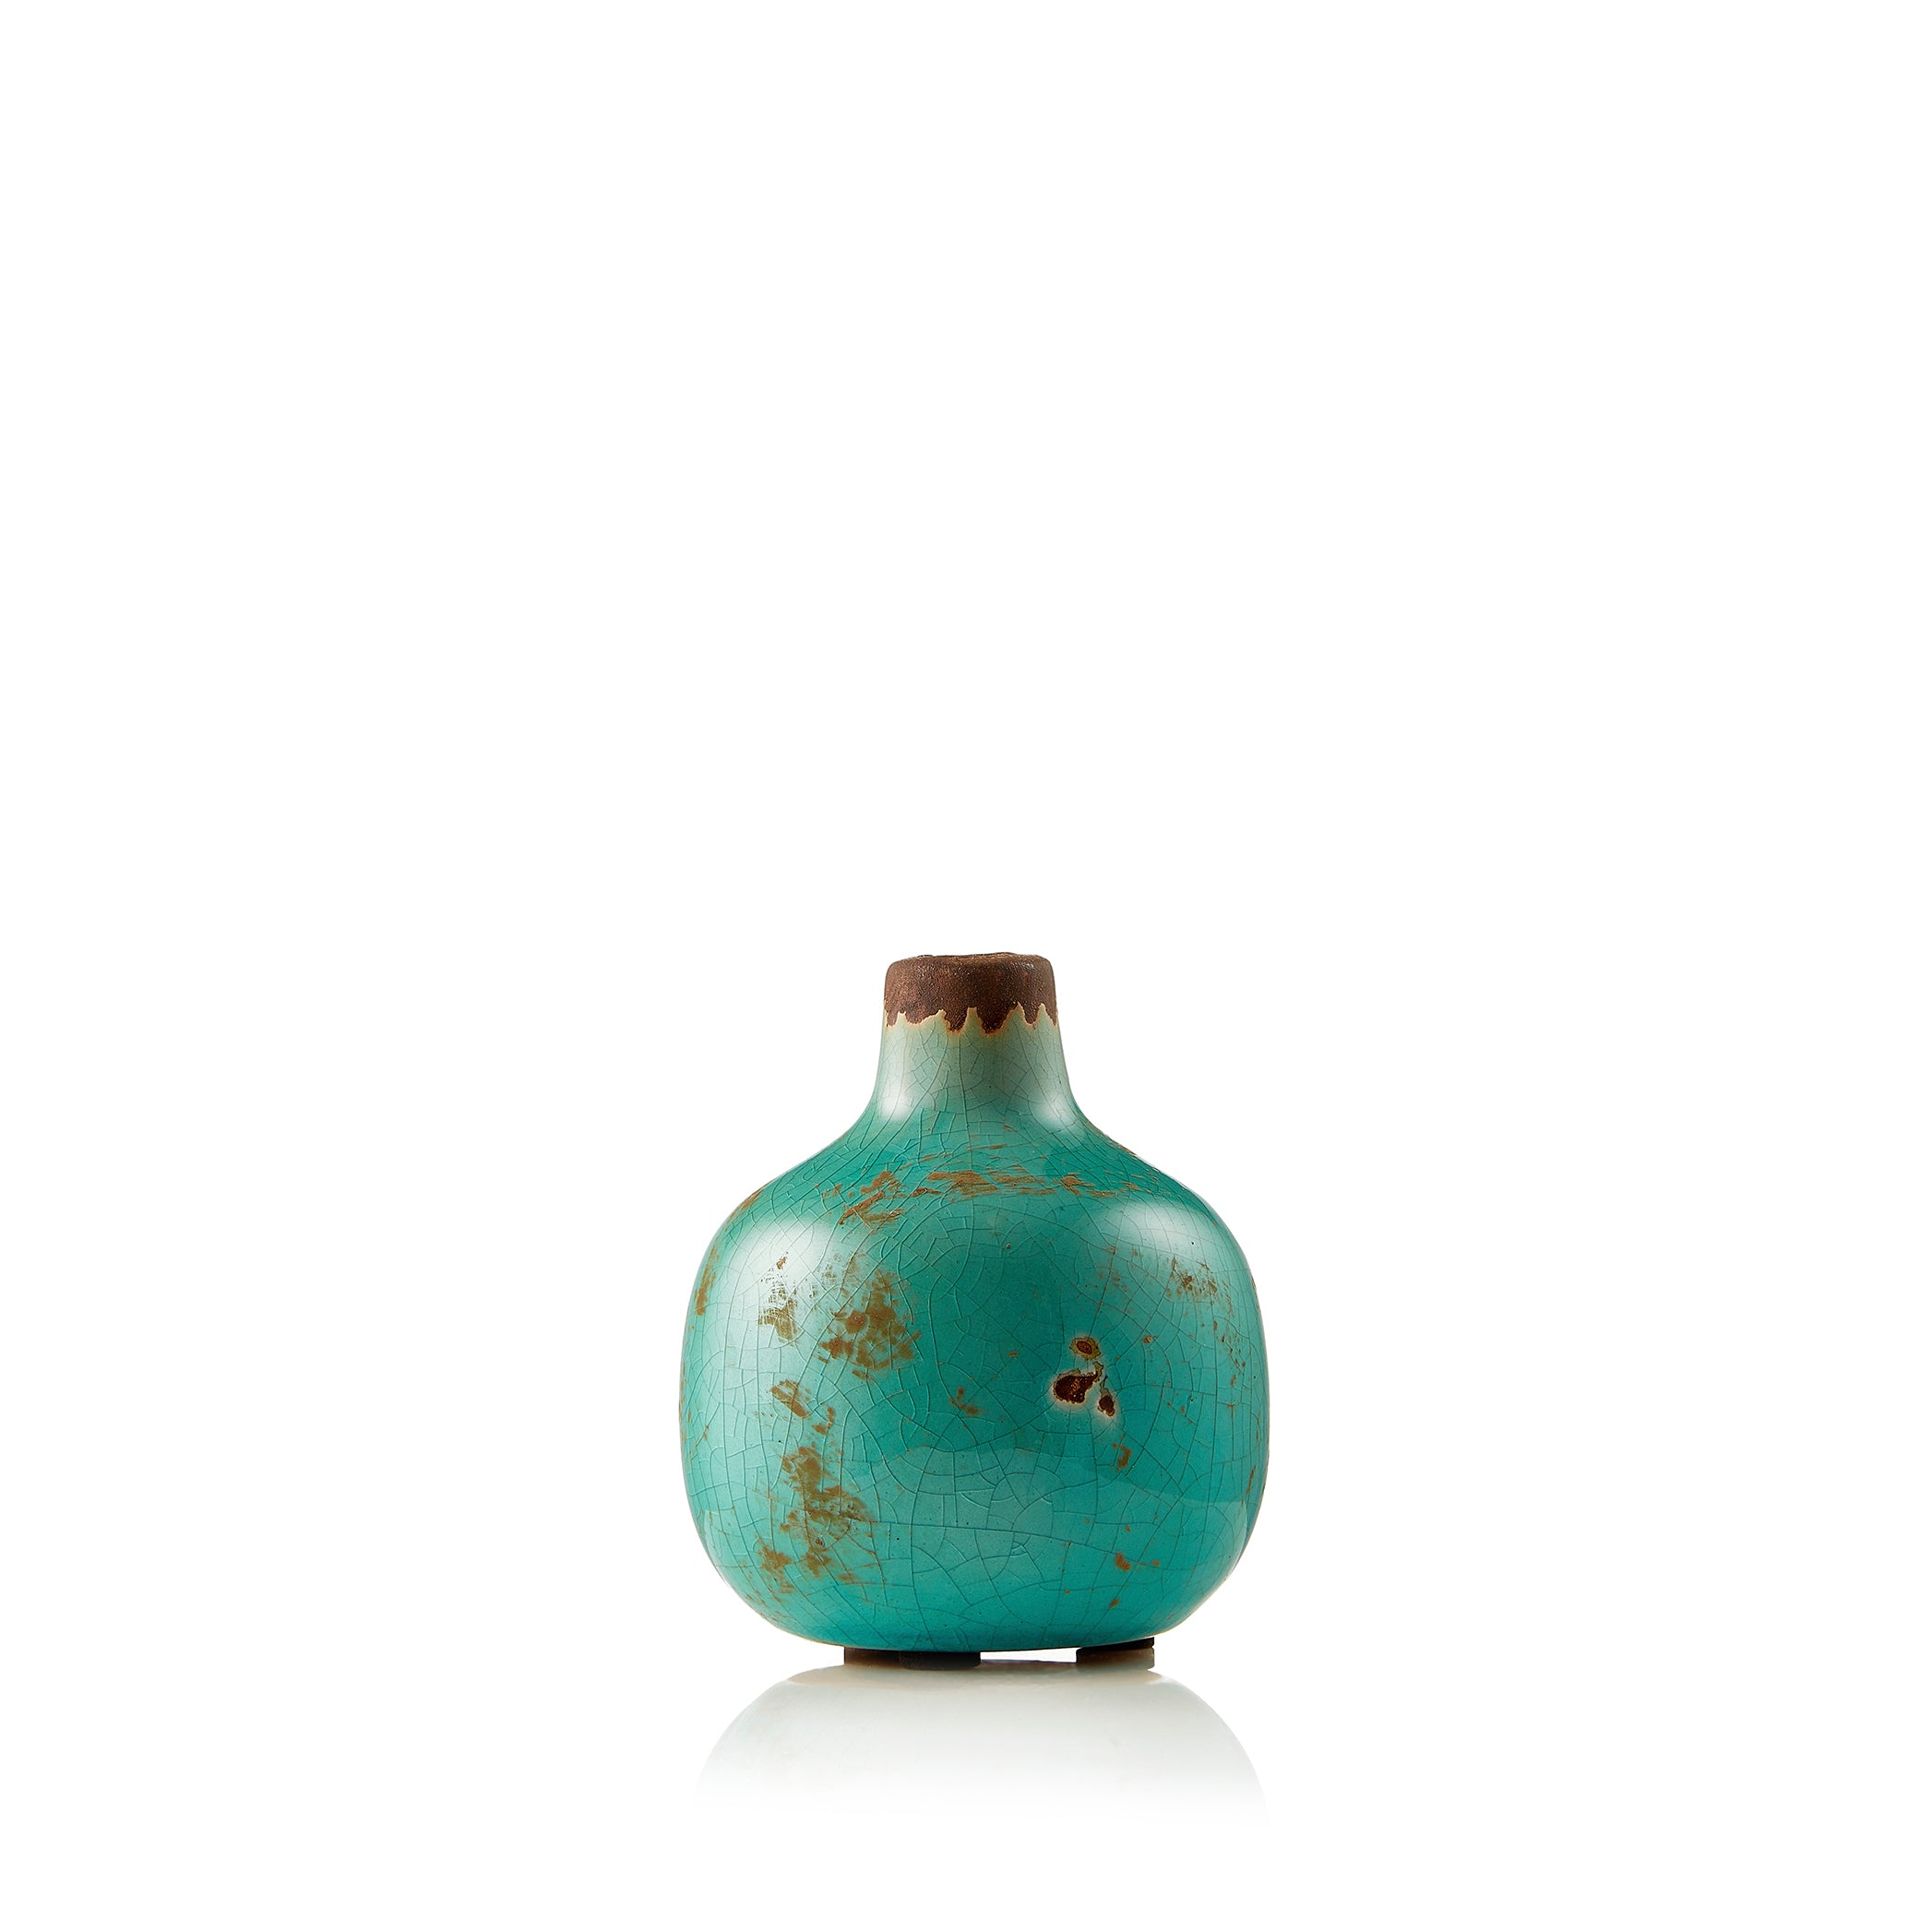 Ceramic Crackled Vase in Turquoise